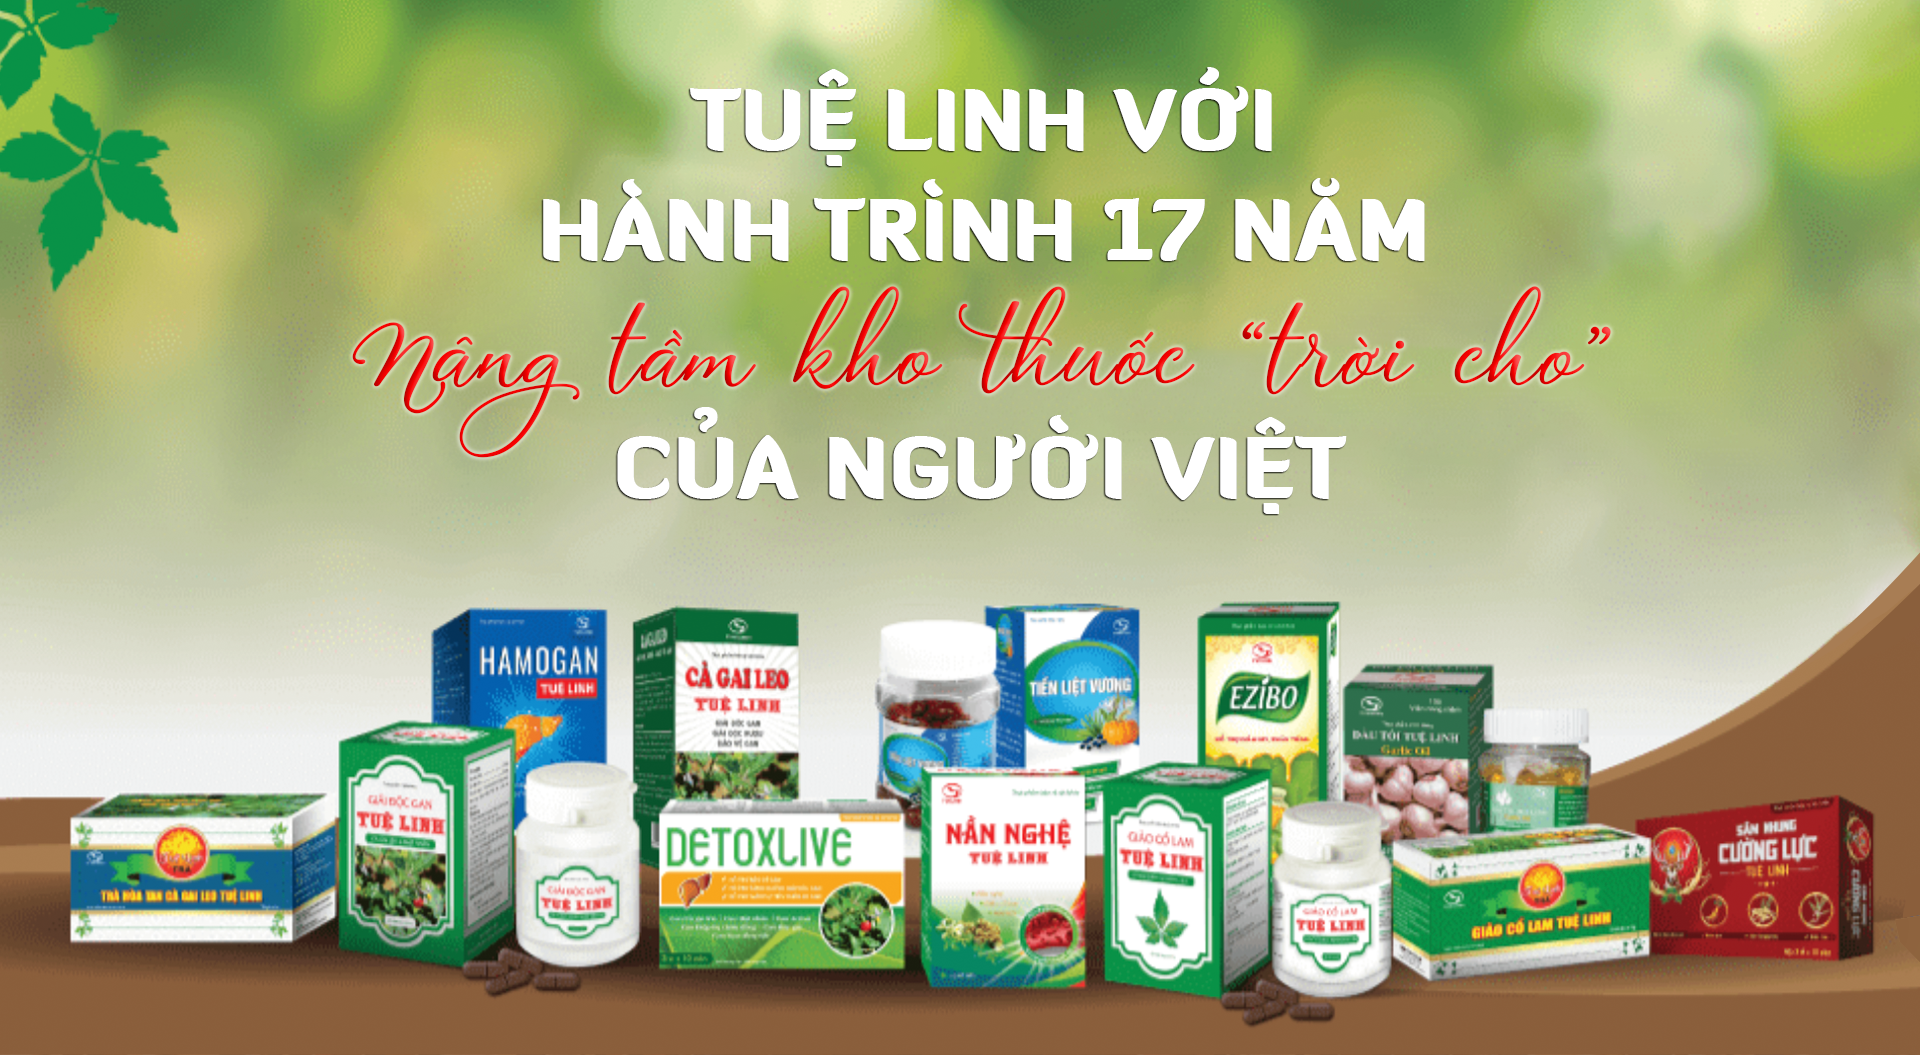 Hành trình 17 năm nâng tầm kho thuốc "trời cho" của người Việt